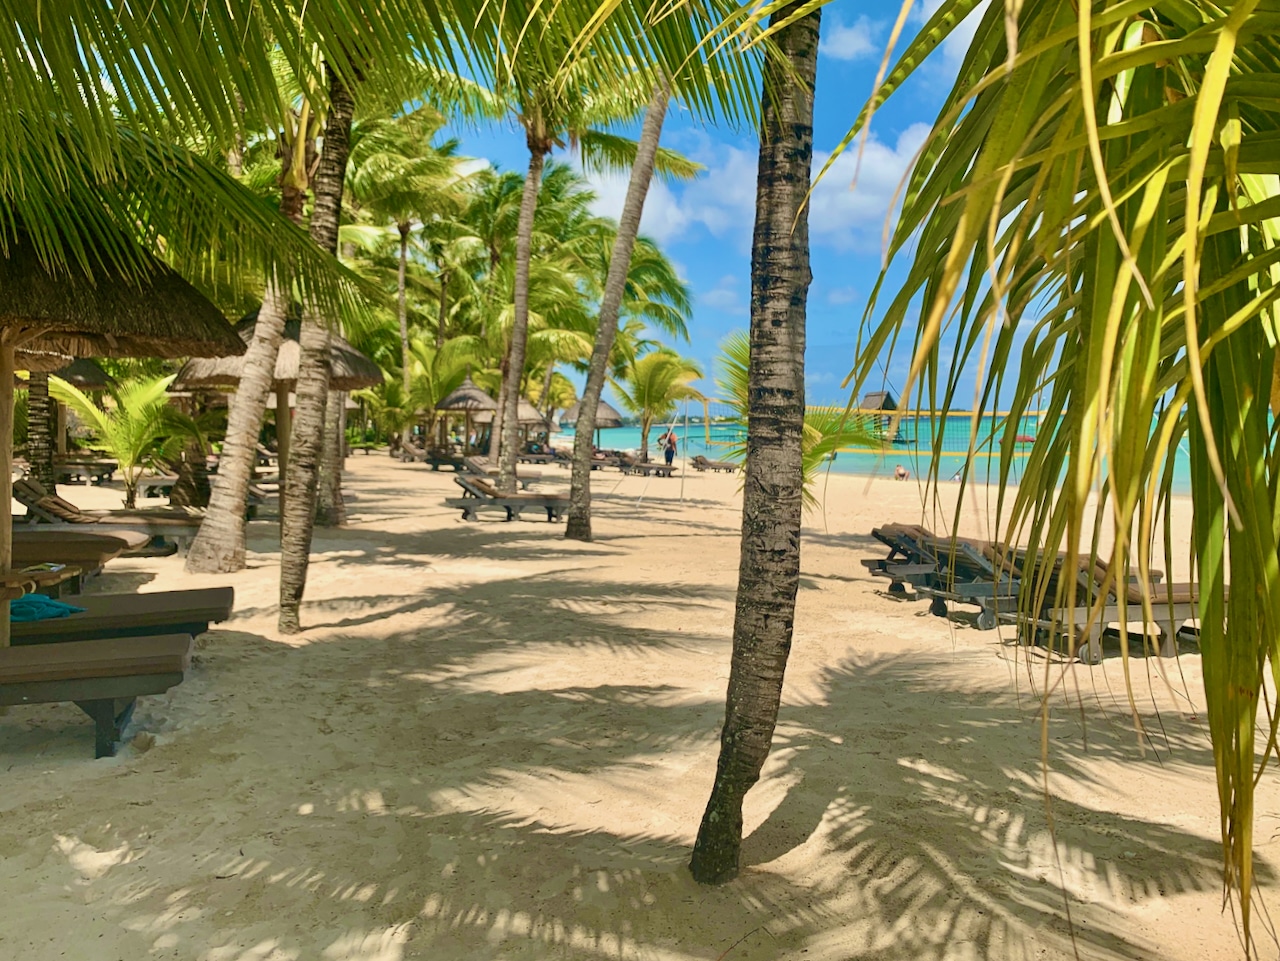 Mijn eerste Mauritius-ervaring - welkom in het paradijs Mauritius is de droom van een tropische zomerdag - welkom in het paradijs. Foto: Sascha Tegtmeyer